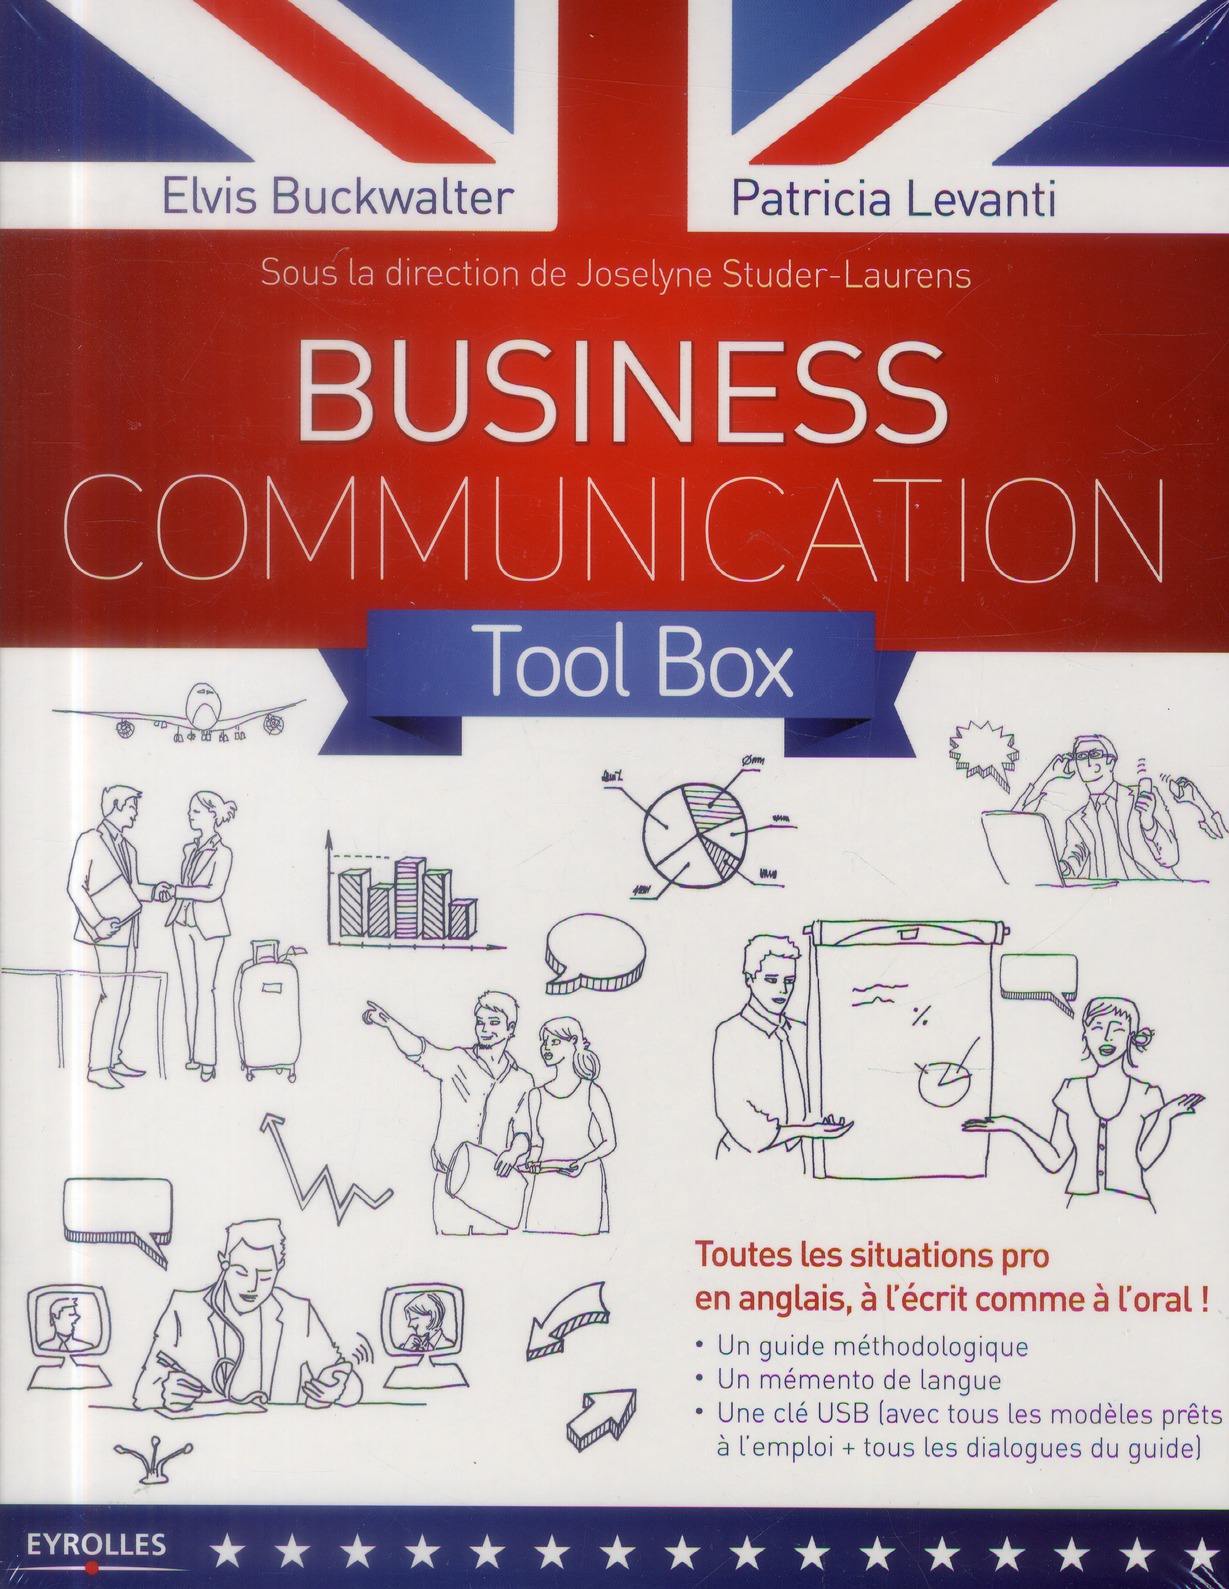 BUSINESS COMMUNICATION TOOL BOX - TOUTES LES SITUATIONS PRO EN ANGLAIS, A L'ECRIT COMME A L'ORAL. UN